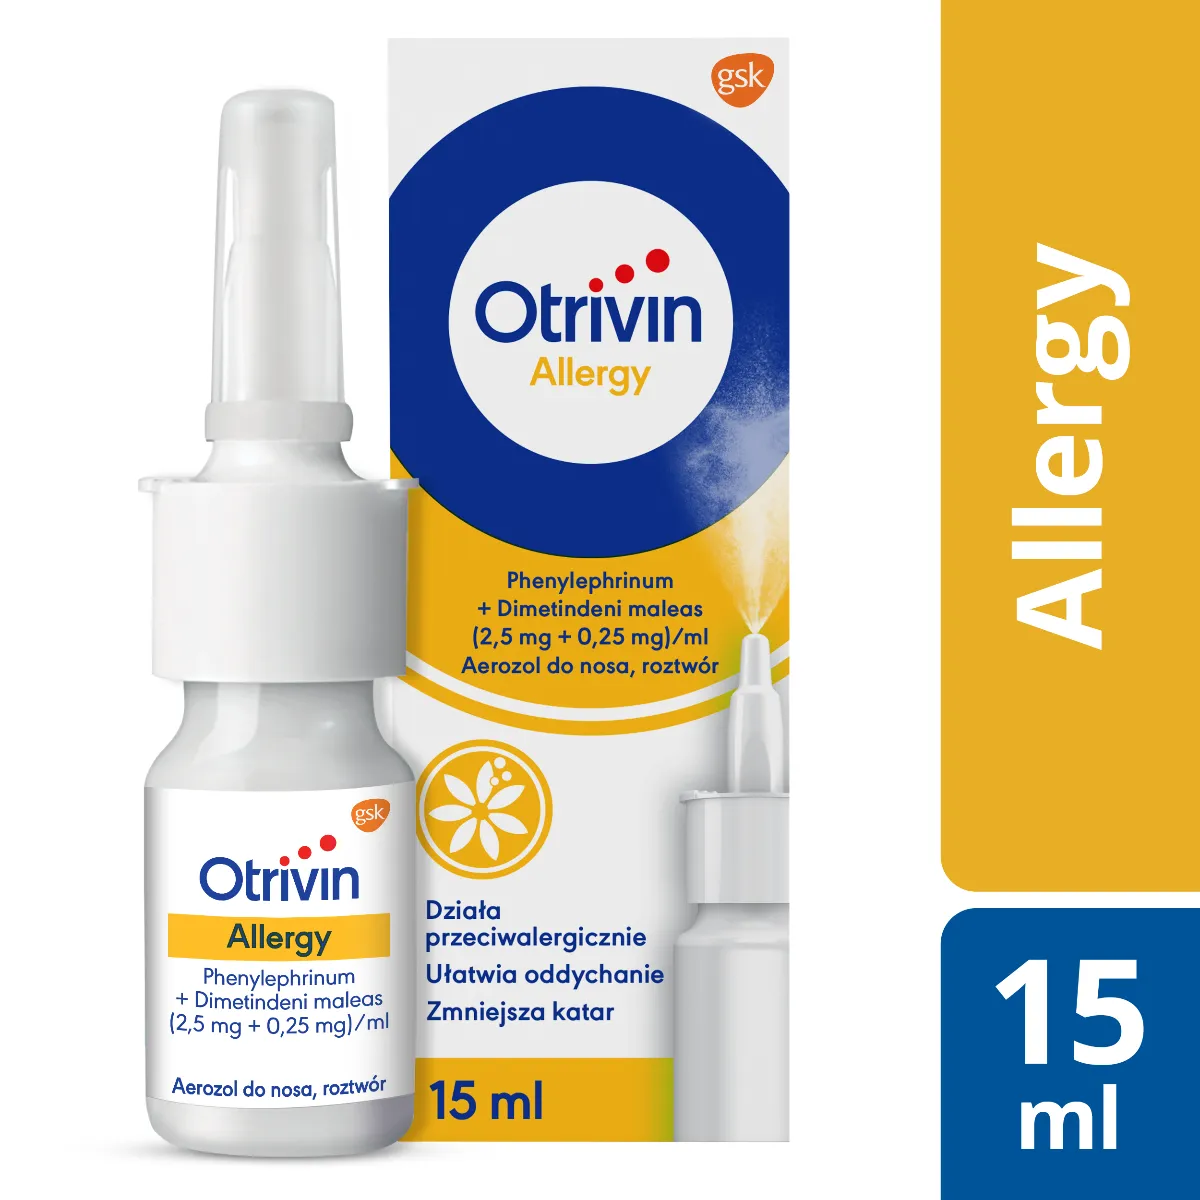 Otrivin Allergy, 2,5 mg + 0,25 mg/ml, aerozol do nosa, 15 ml